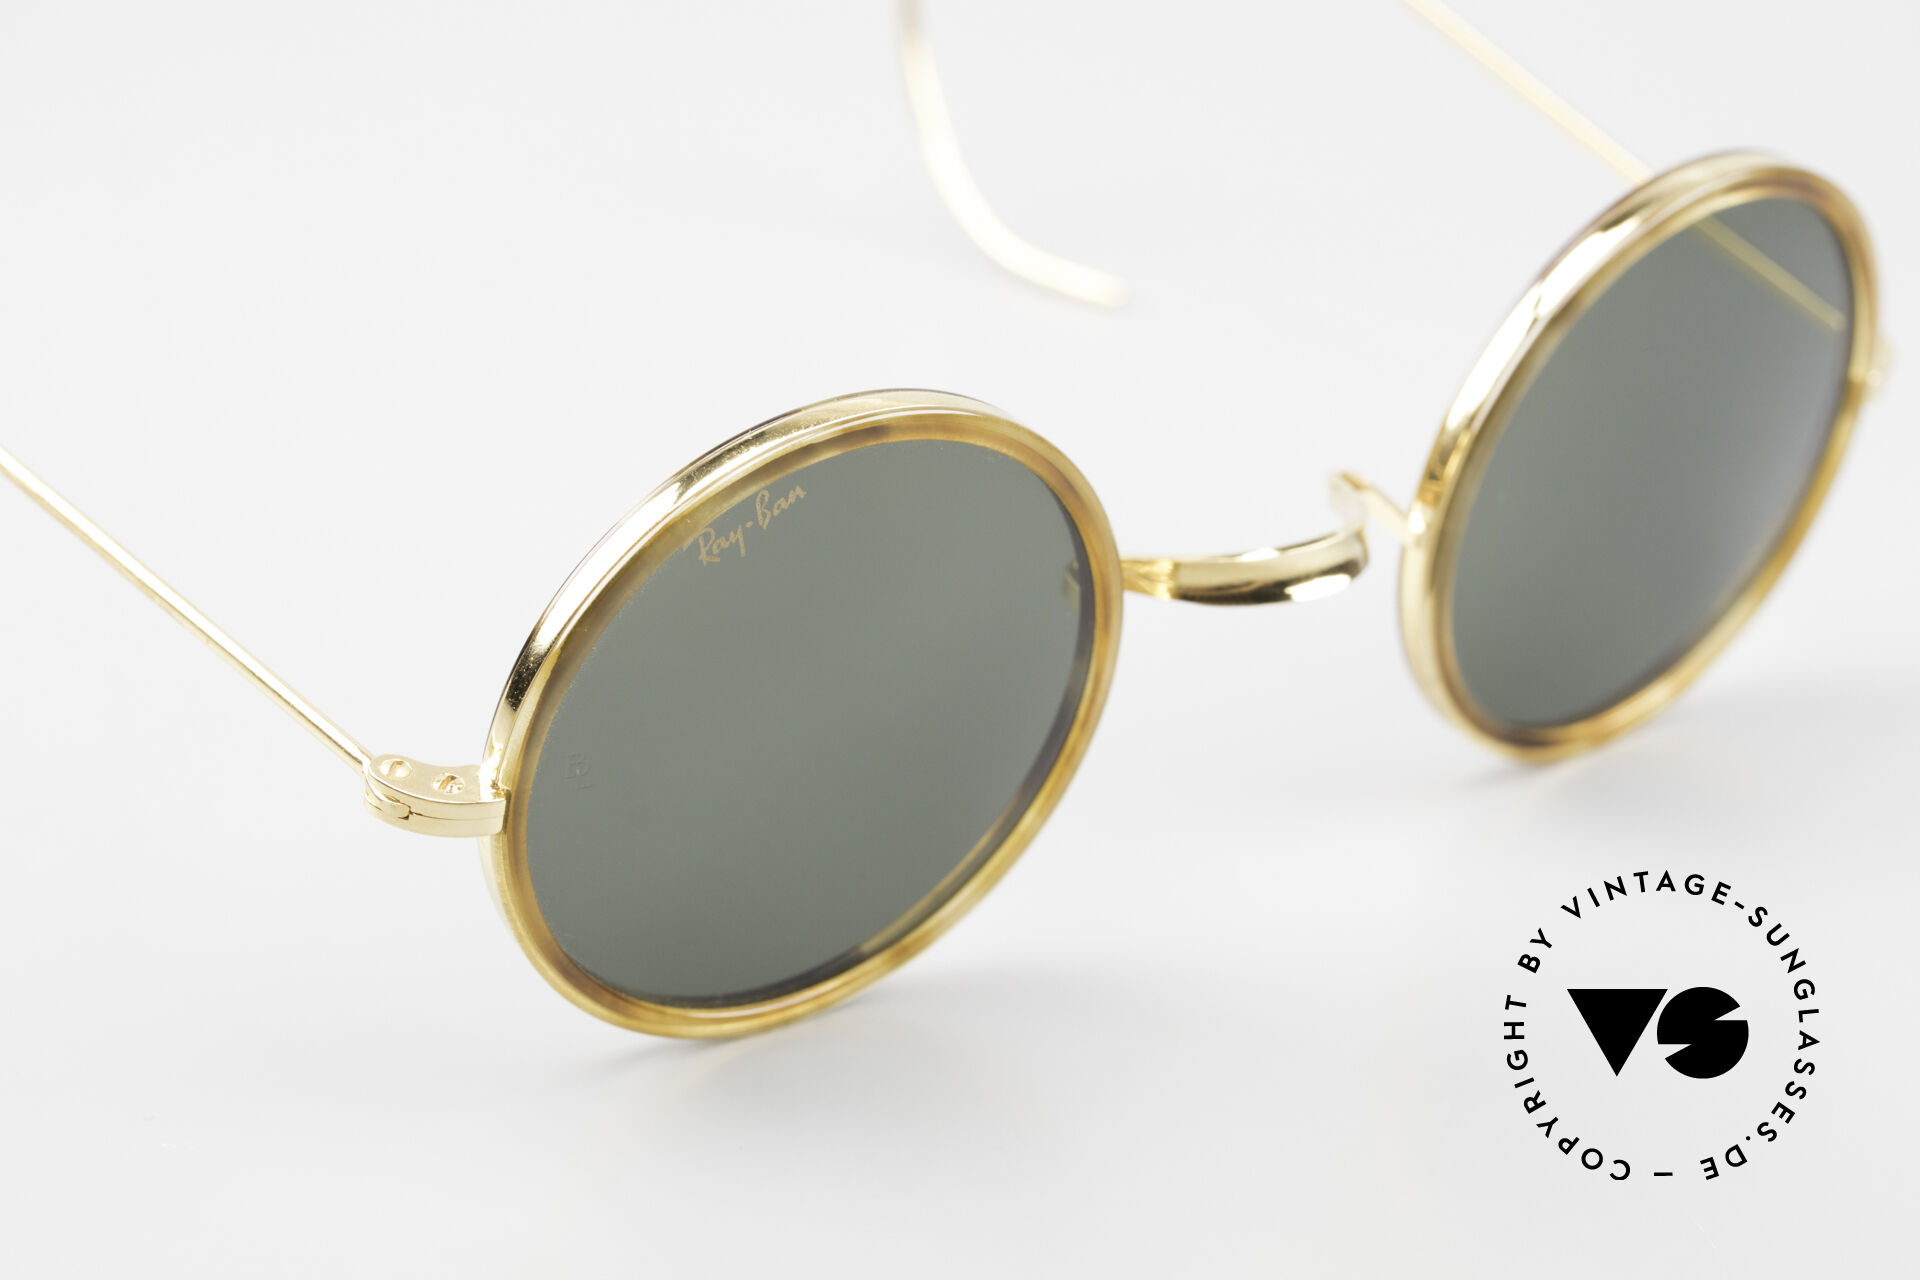 Vintage Round Glasses Are Back | Blog | Eyebuydirect